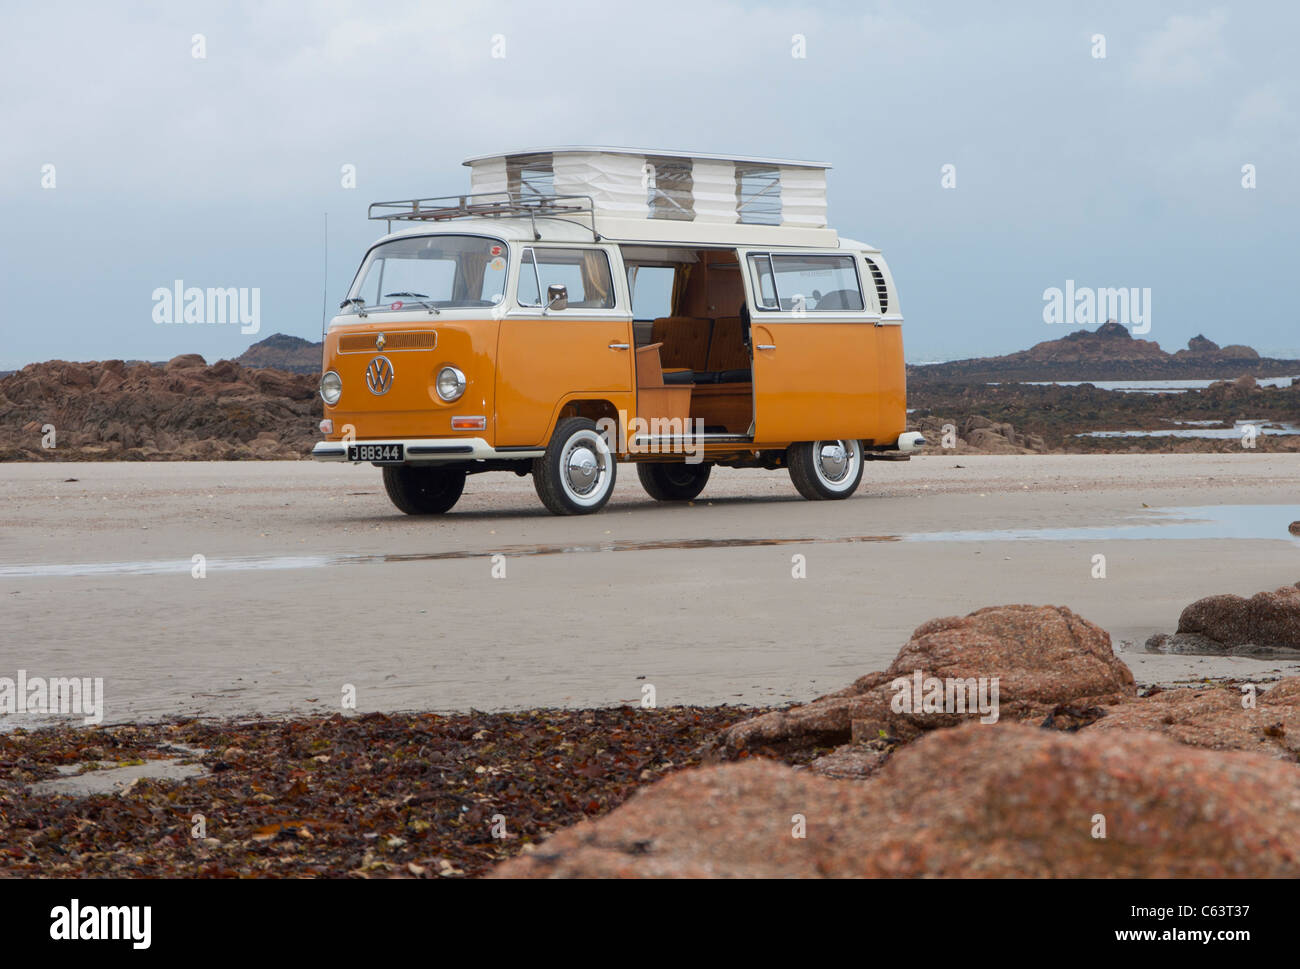 VW Volkswagen bay window Devon camper van classic raffreddato ad aria con propulsori posteriore van pop up tetto spiaggia sollevata arancione bianco porta scorrevole Foto Stock